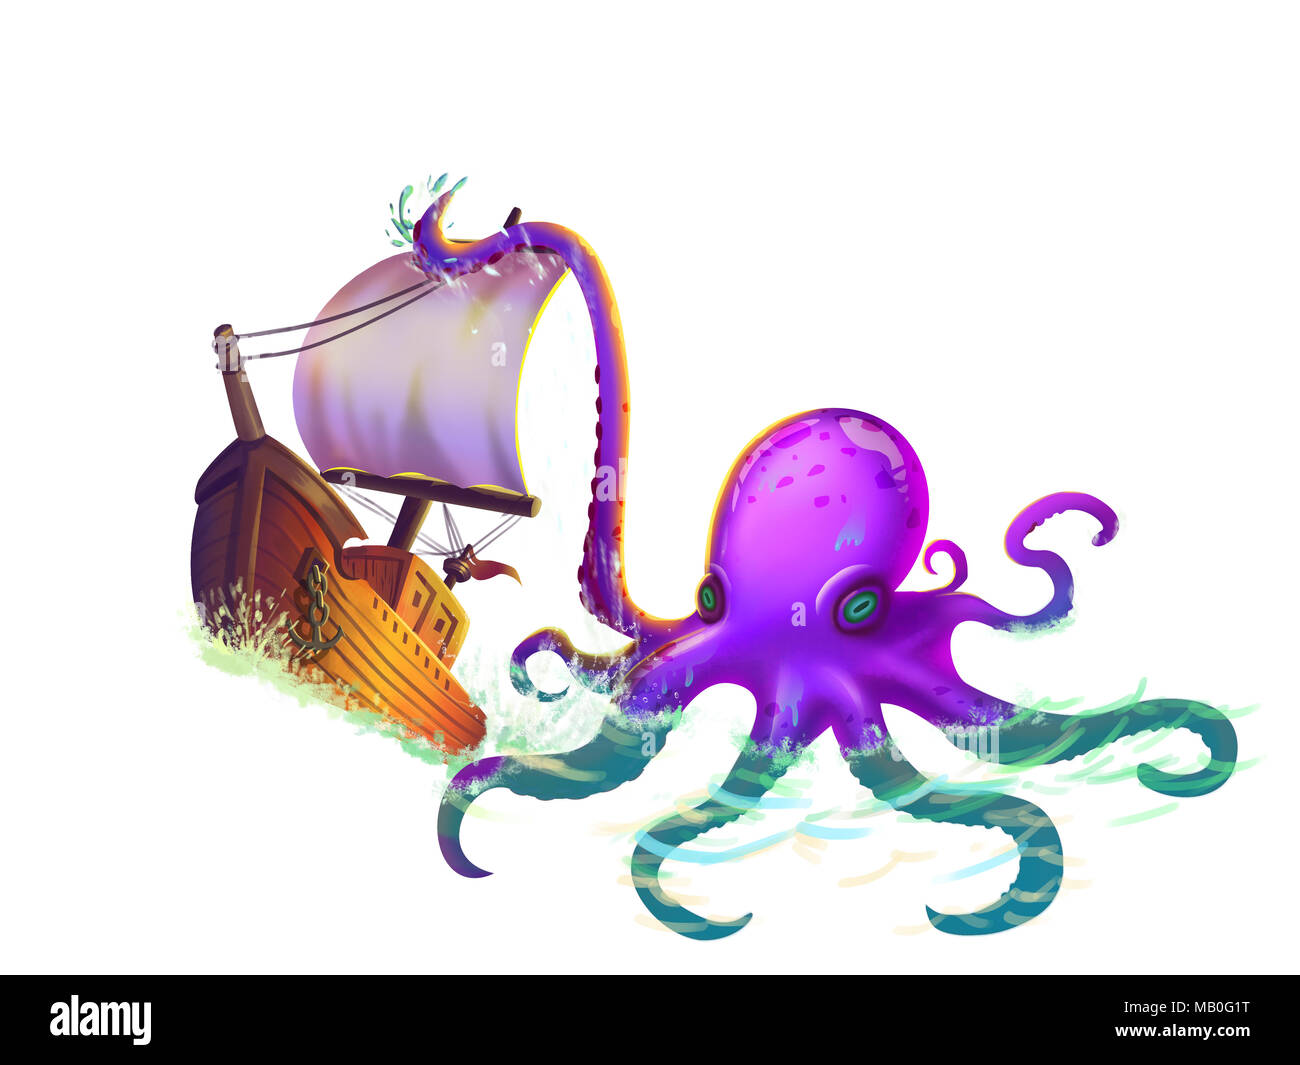 Les tentacules de la Pieuvre géante, réaliste et fantastique avec un style futuriste. Jeu vidéo art numérique CG, Concept Illustration, Caricature réaliste Banque D'Images